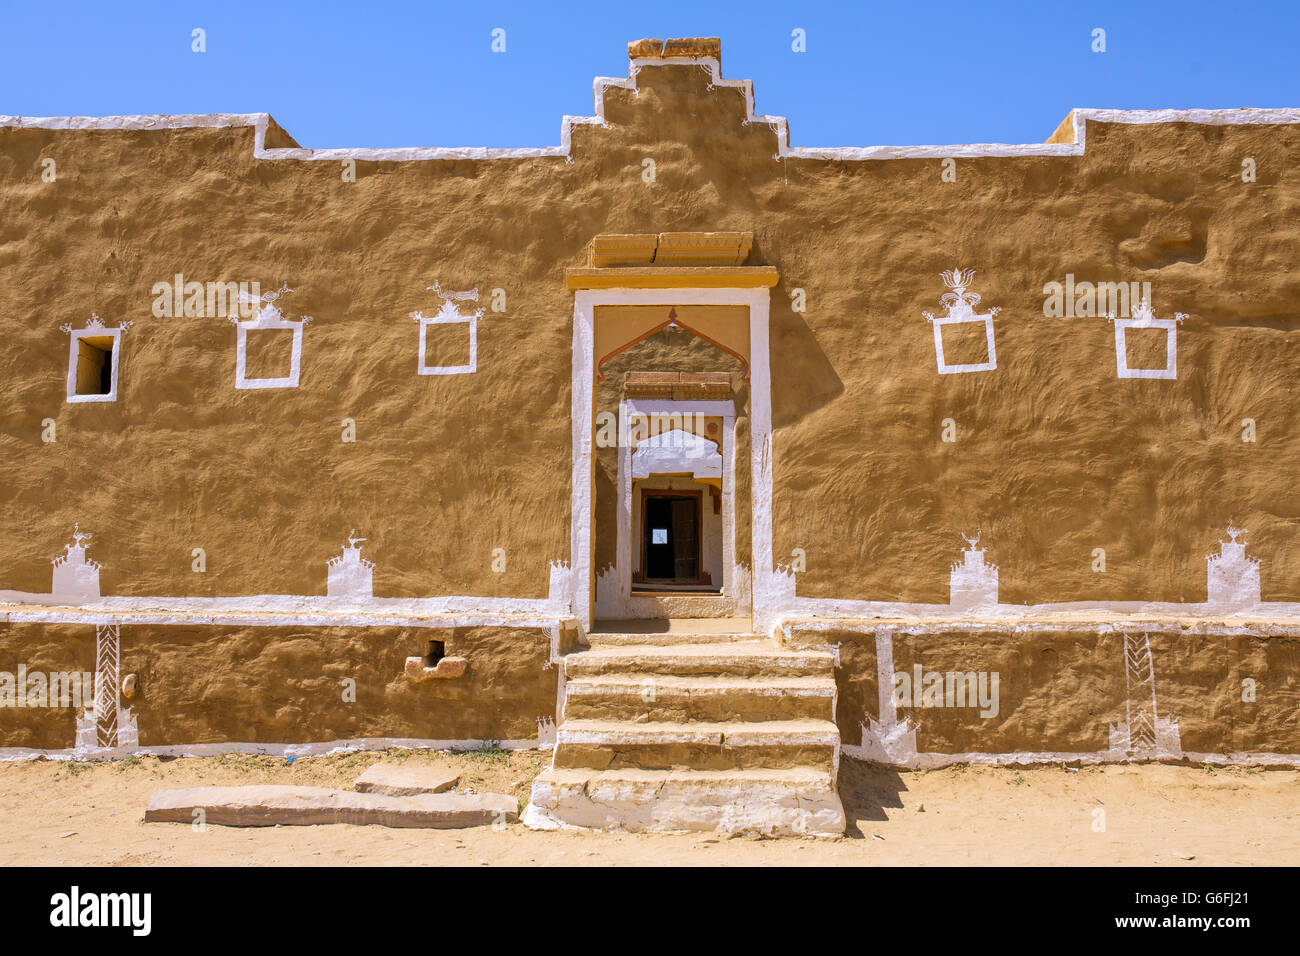 Traditionelles Haus in Kuldhara Wüstung in der Nähe von Jaisalmer, Rajasthan, Indien Stockfoto